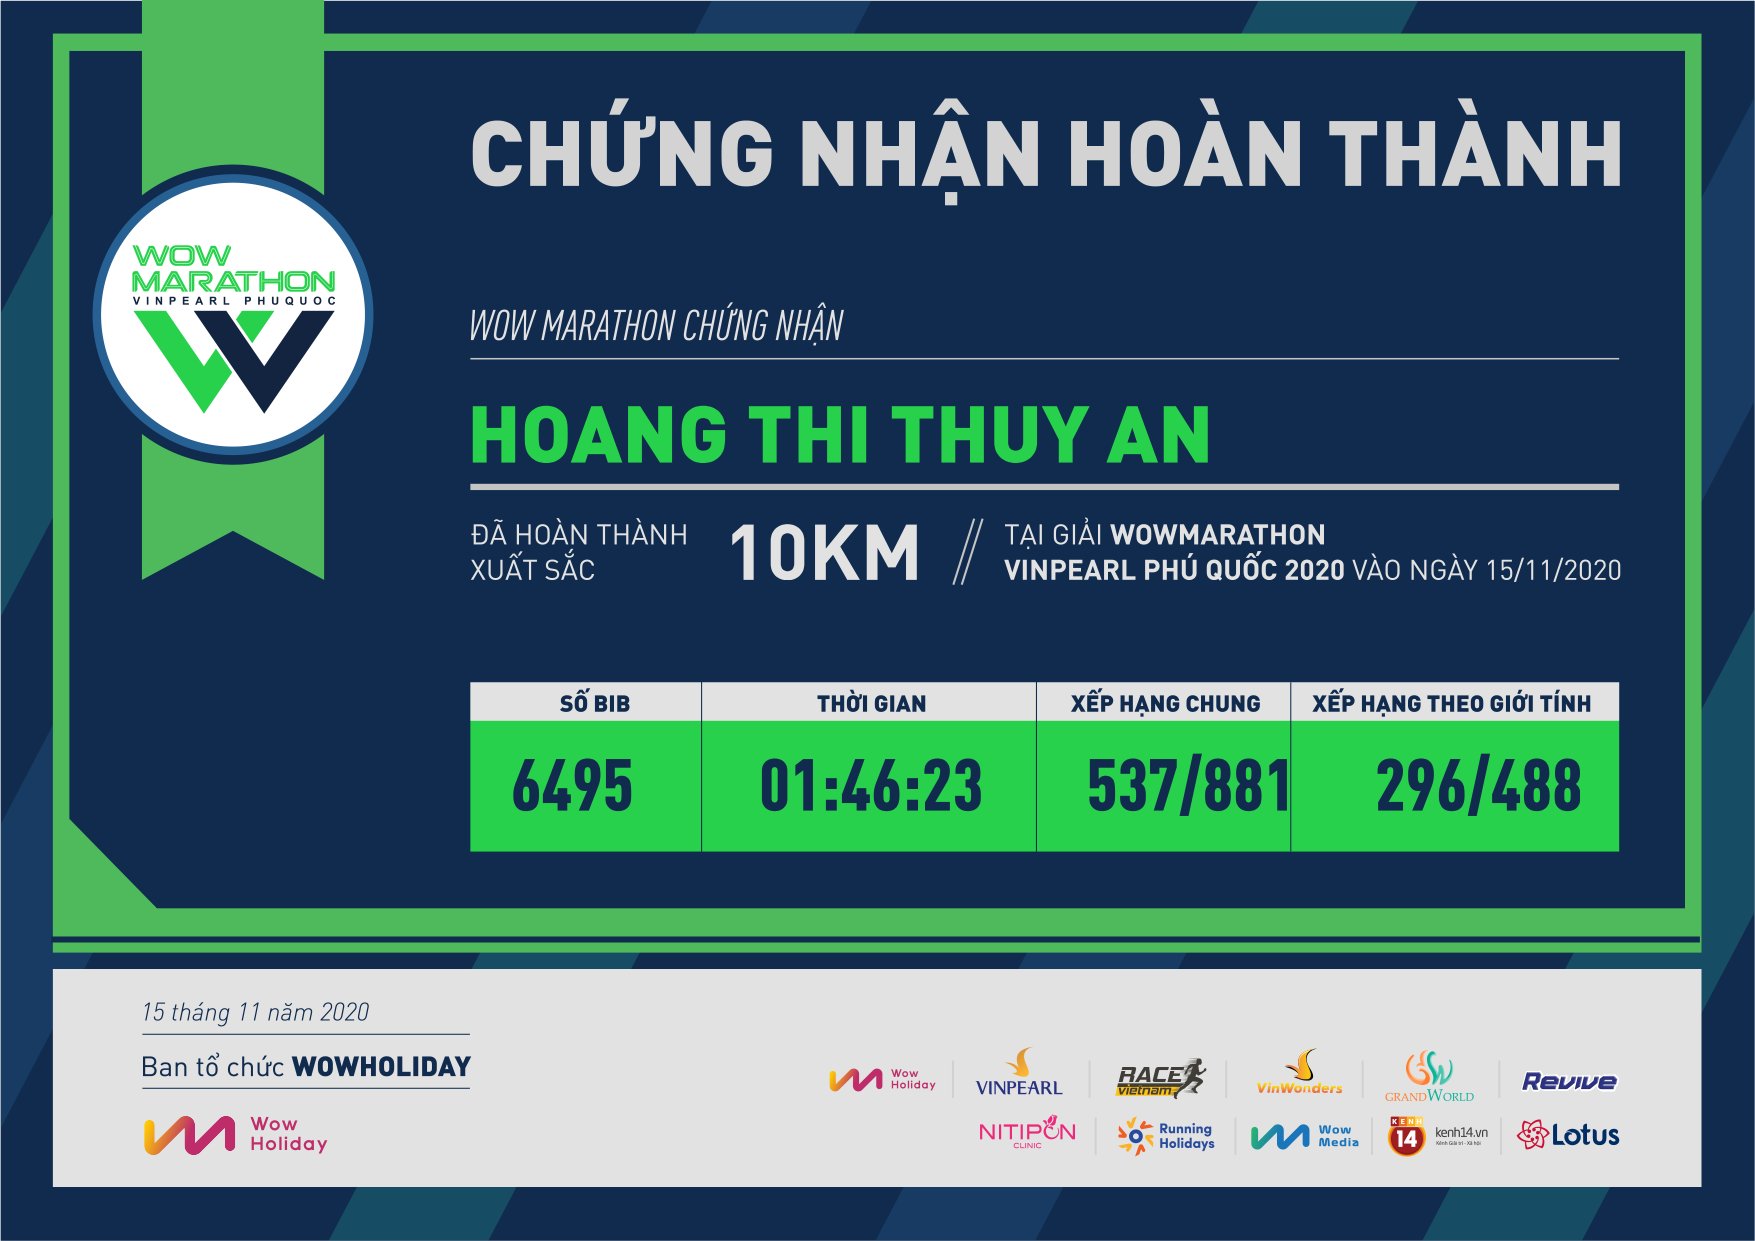 6495 - Hoang Thi Thuy An